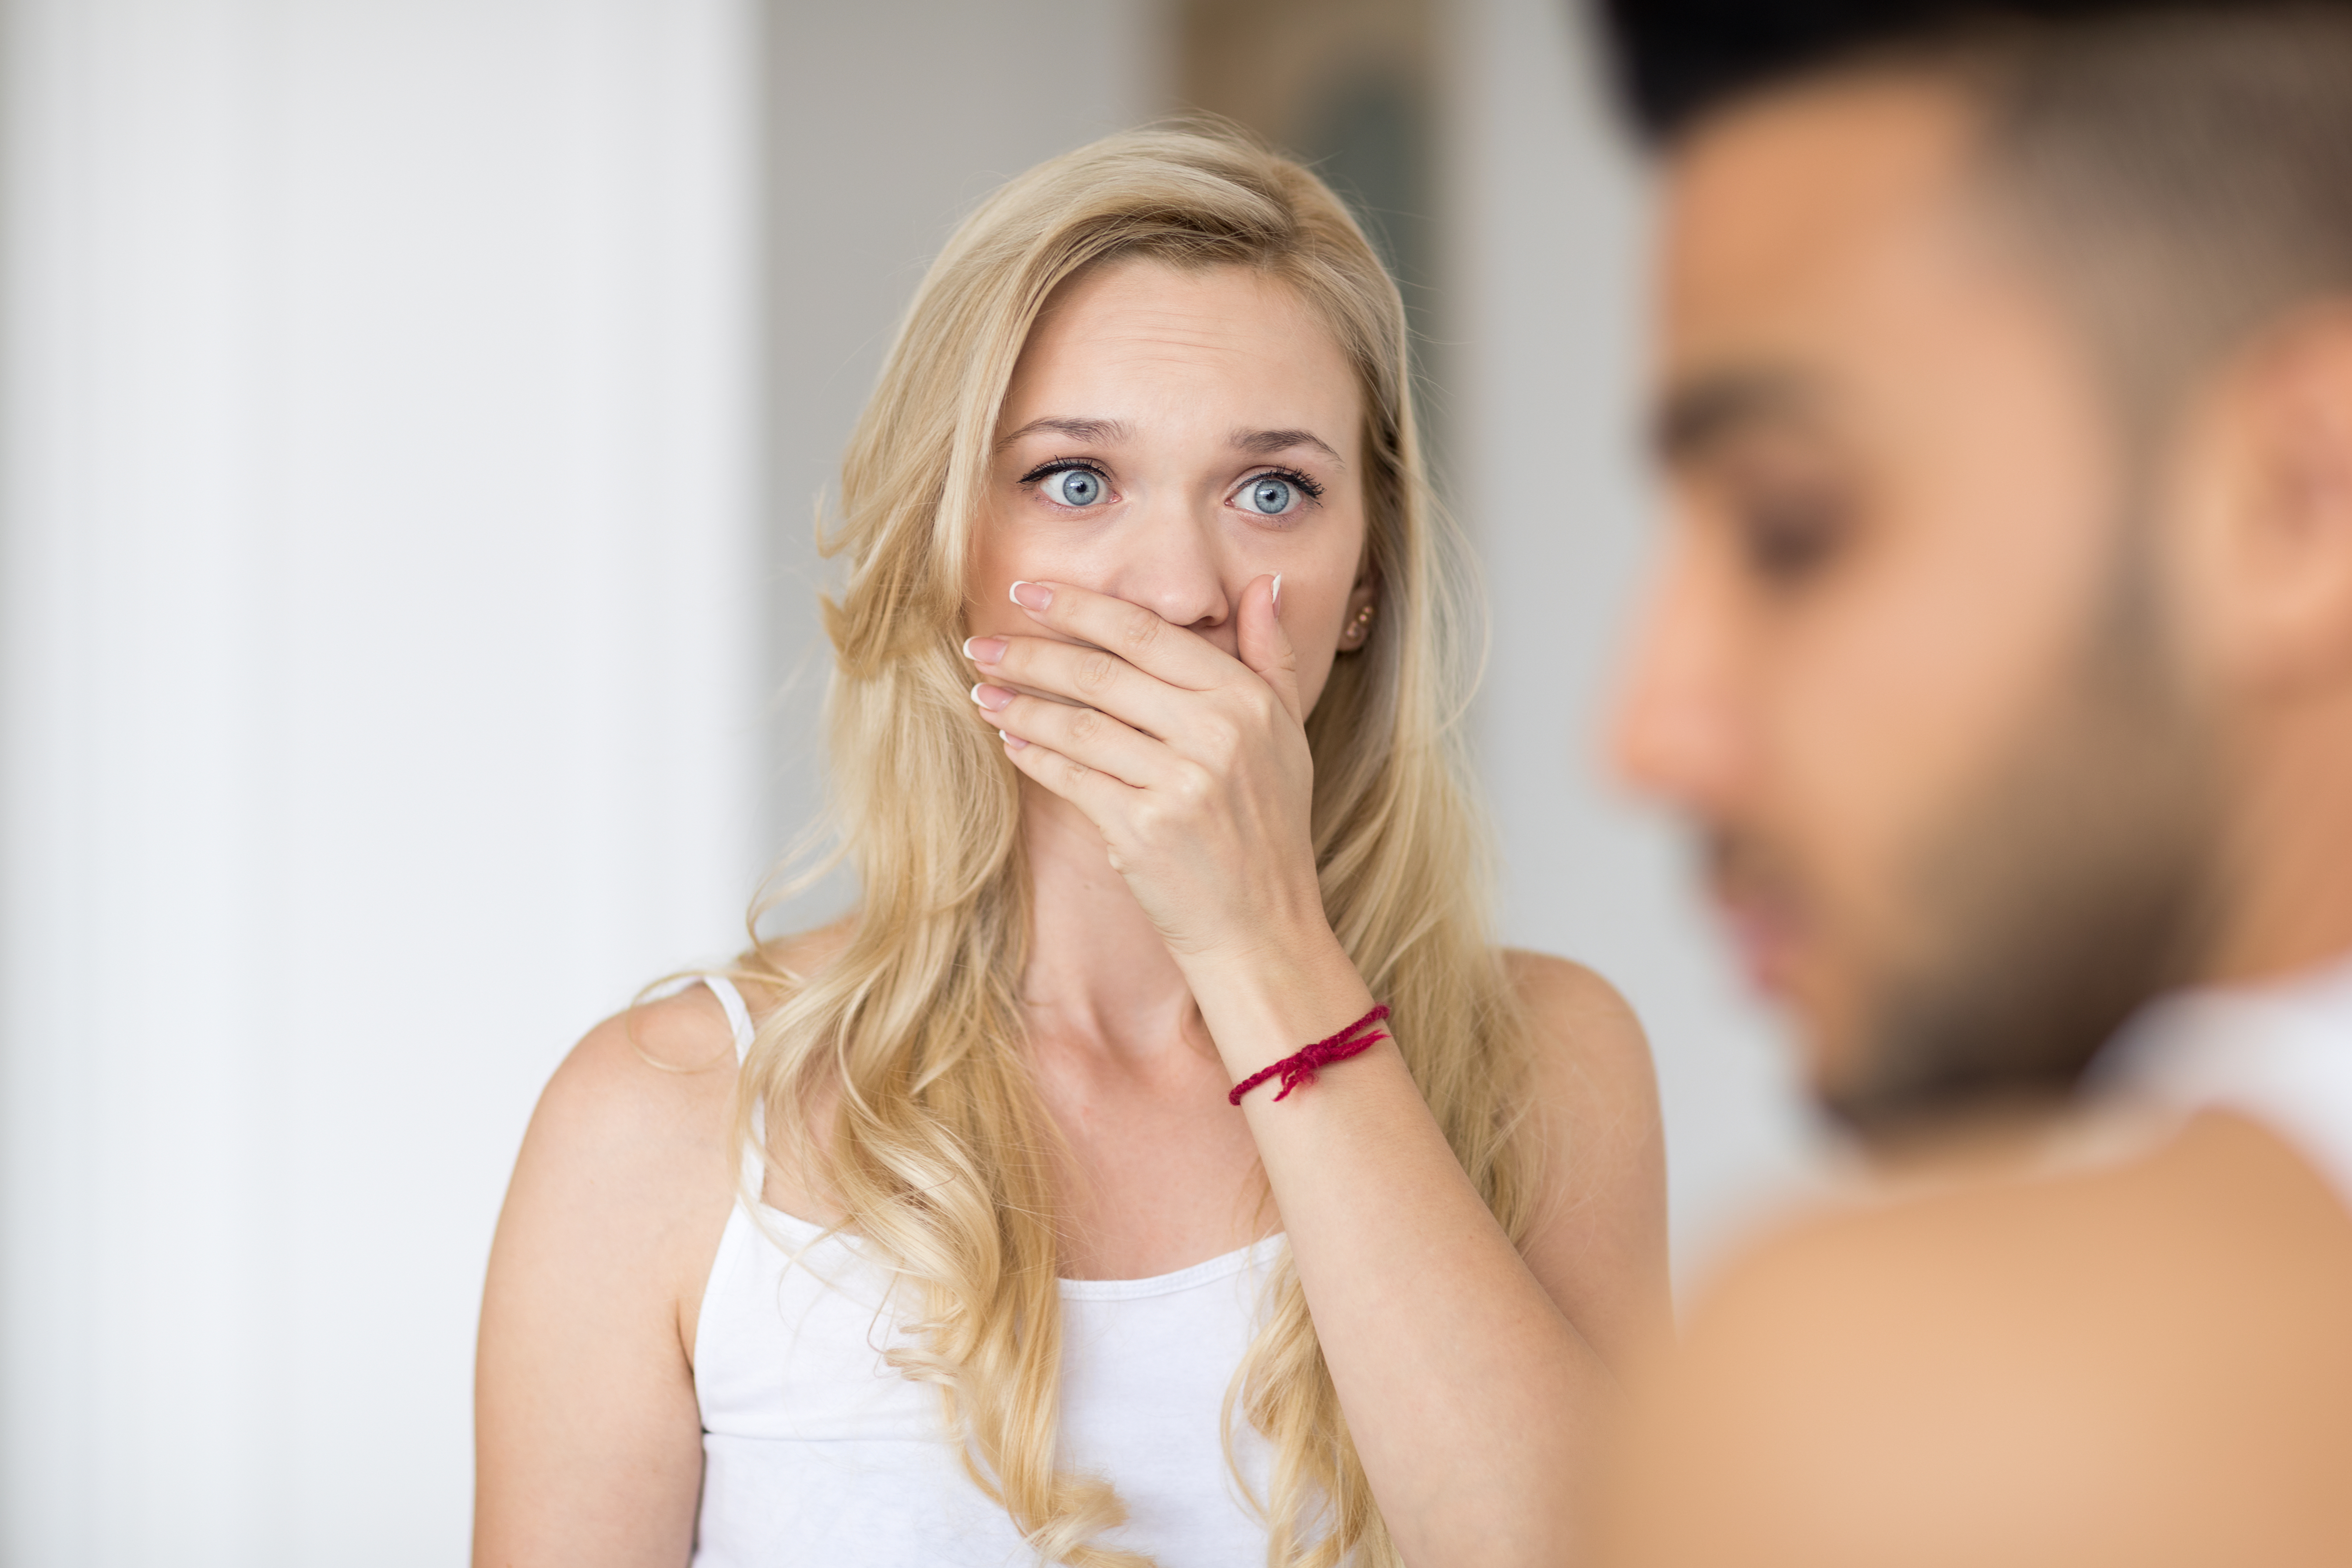 Une femme choquée qui regarde un homme à l'air coupable | Source : Shutterstock